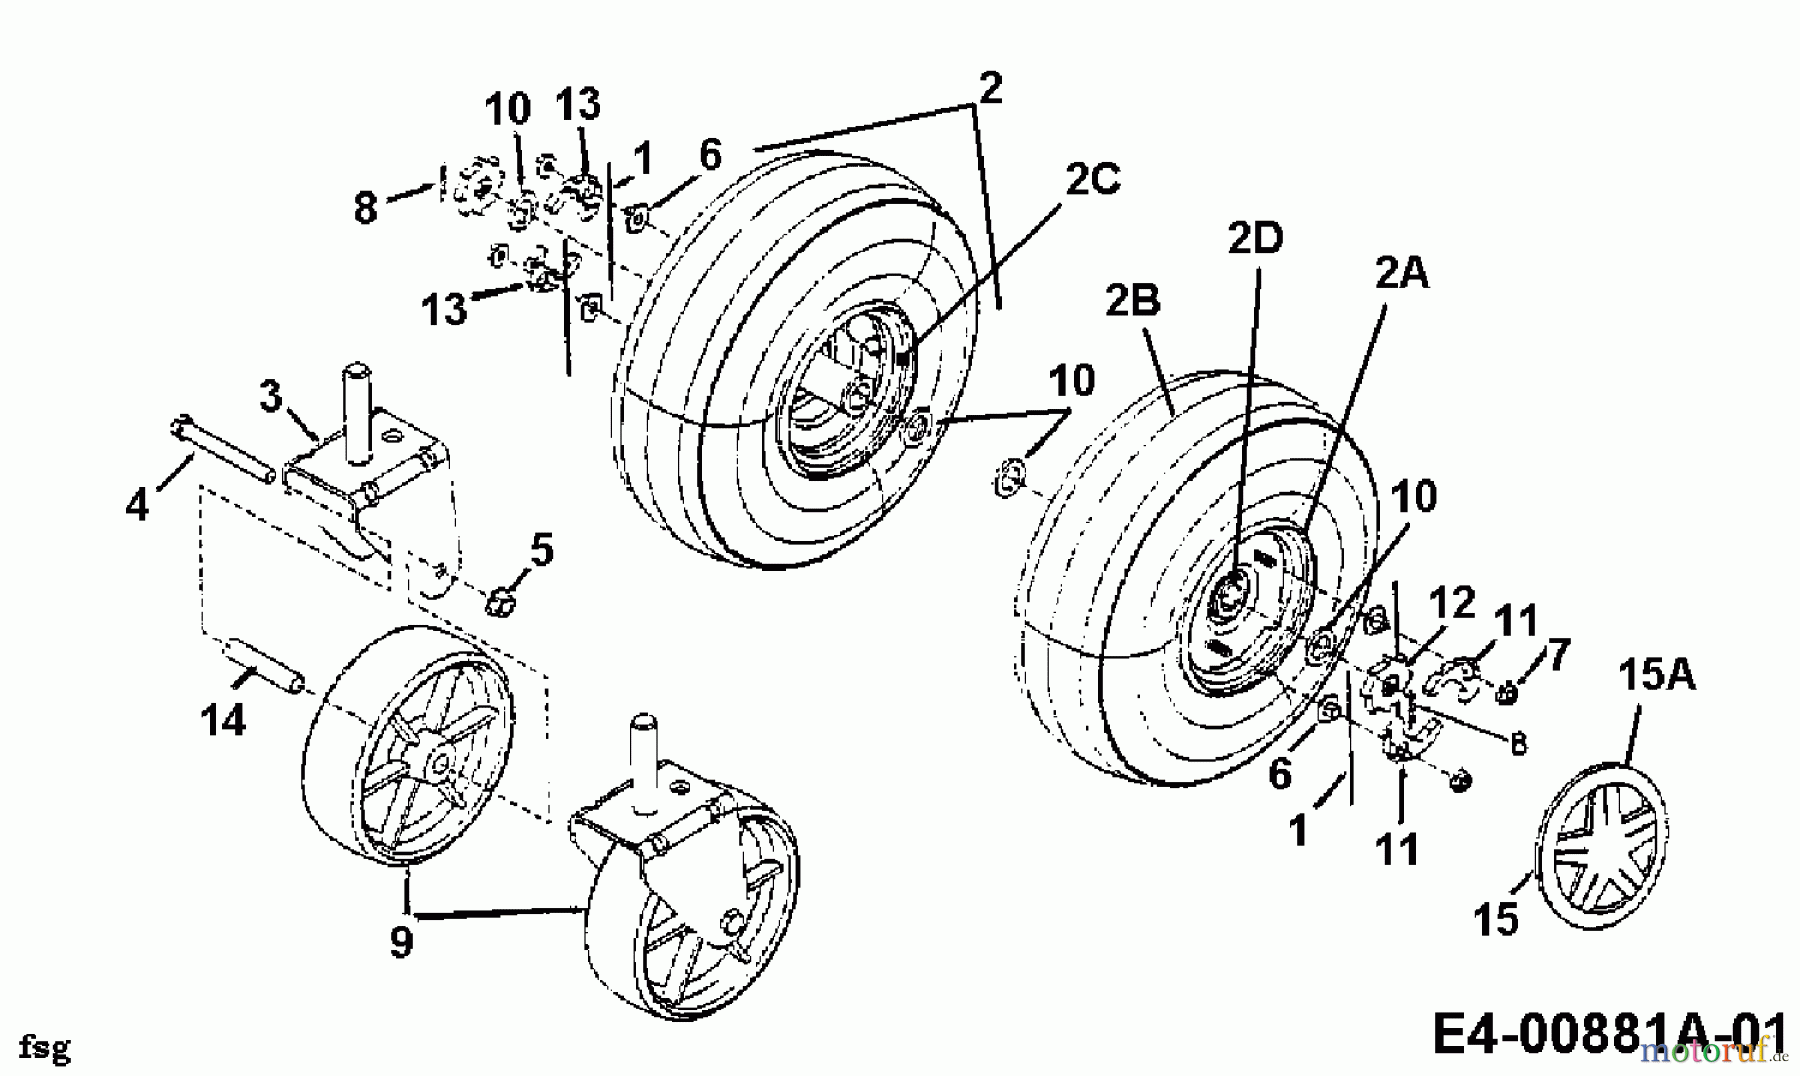  Gutbrod Leaf blower, Blower vac 203 B 24A-203B604  (1998) Wheels